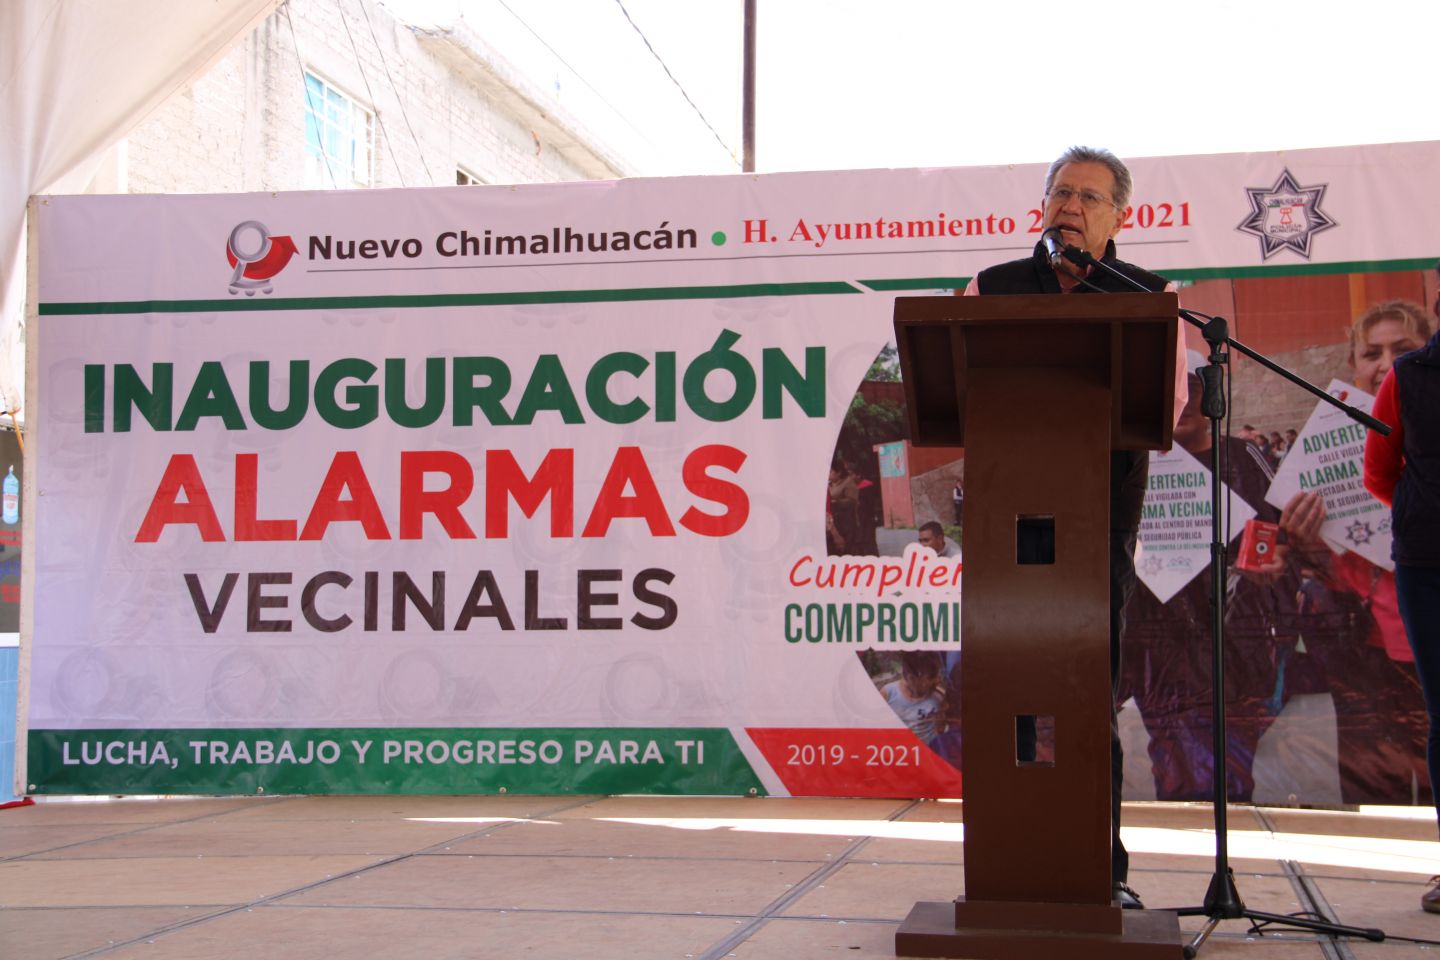 #El gobierno de Chimalhuacán fortalece la seguridad en Acuitlapilco con Alarmas Vecinales